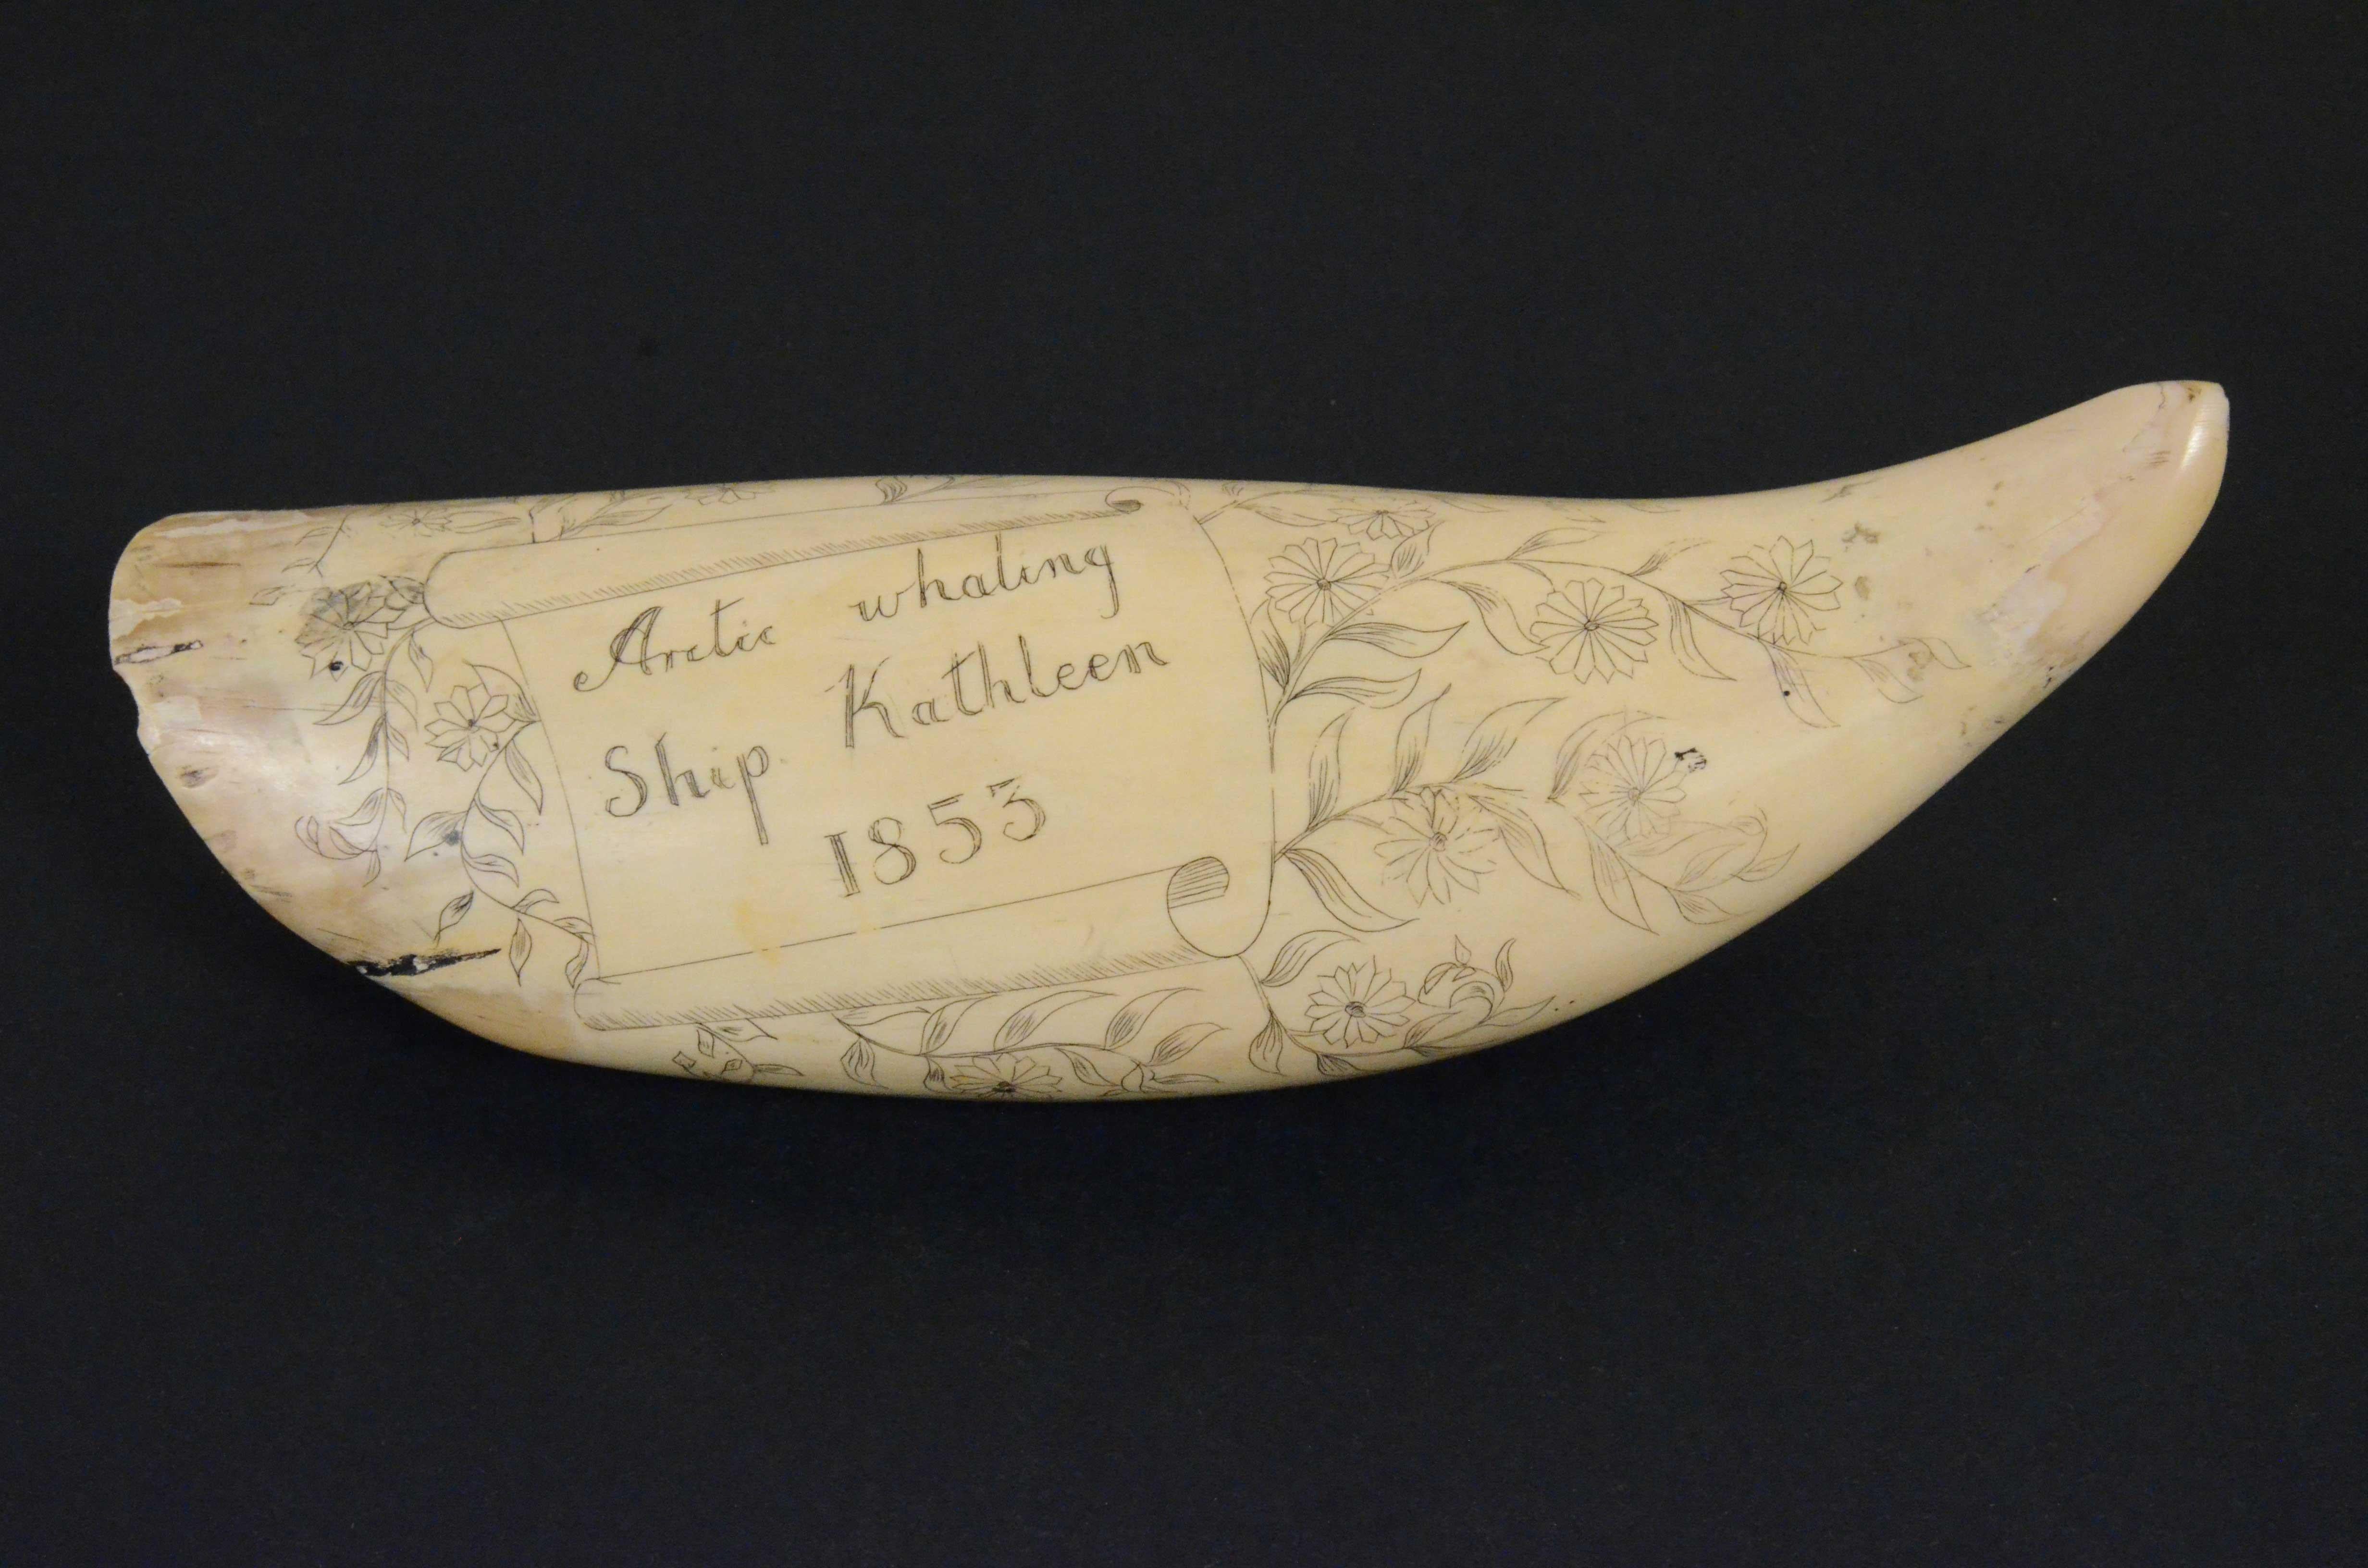 Scrimshaw di un dente di balena inciso, di pregevole fattura datato 1853, lunghezza  cm 18,7, raffigurante 3 balene, 2  barche  a remi con balenieri, 2 vascelli e isola sullo sfondo. Il retro del dente reca la seguente incisione  Arctic whaling Ship